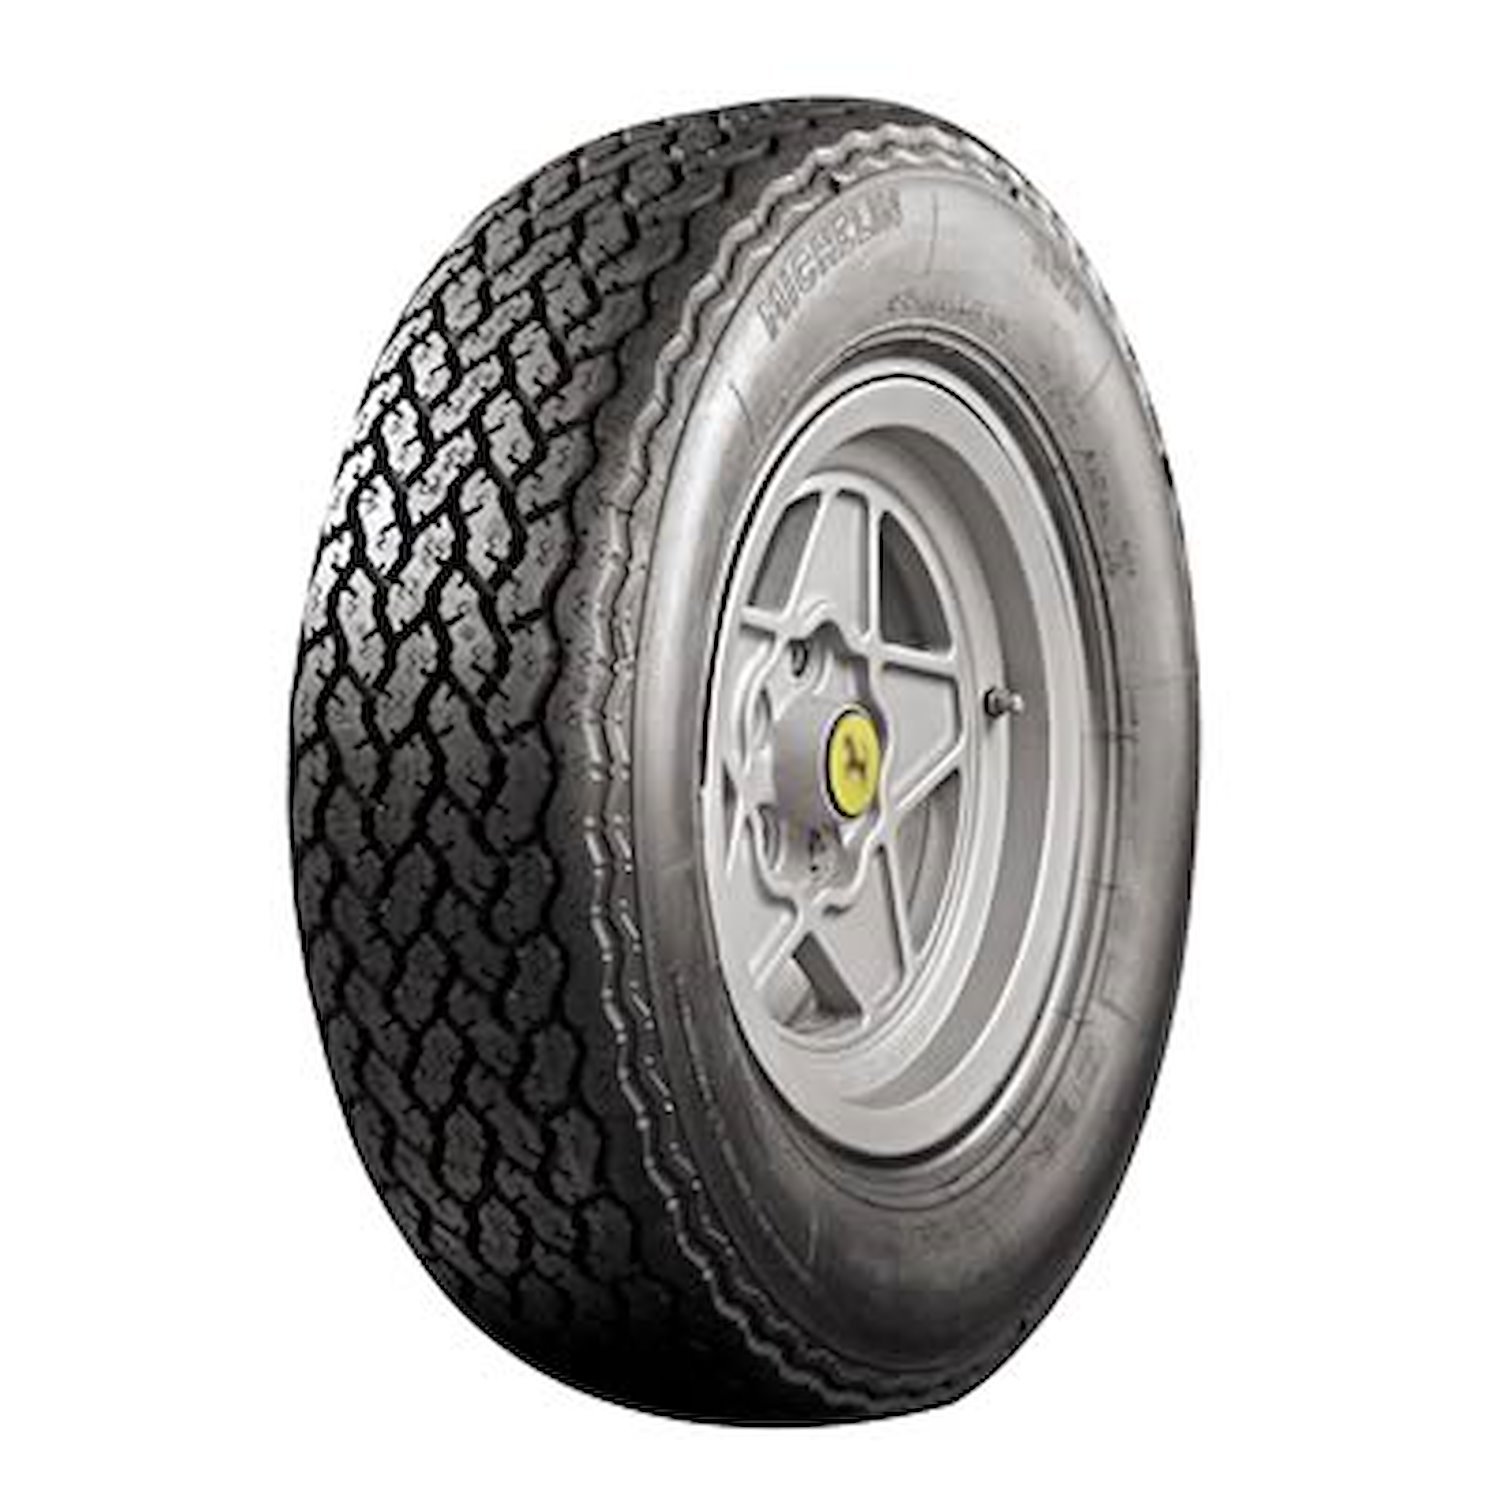 57978 Tire, Michelin XWX, 225/70VR15 92W